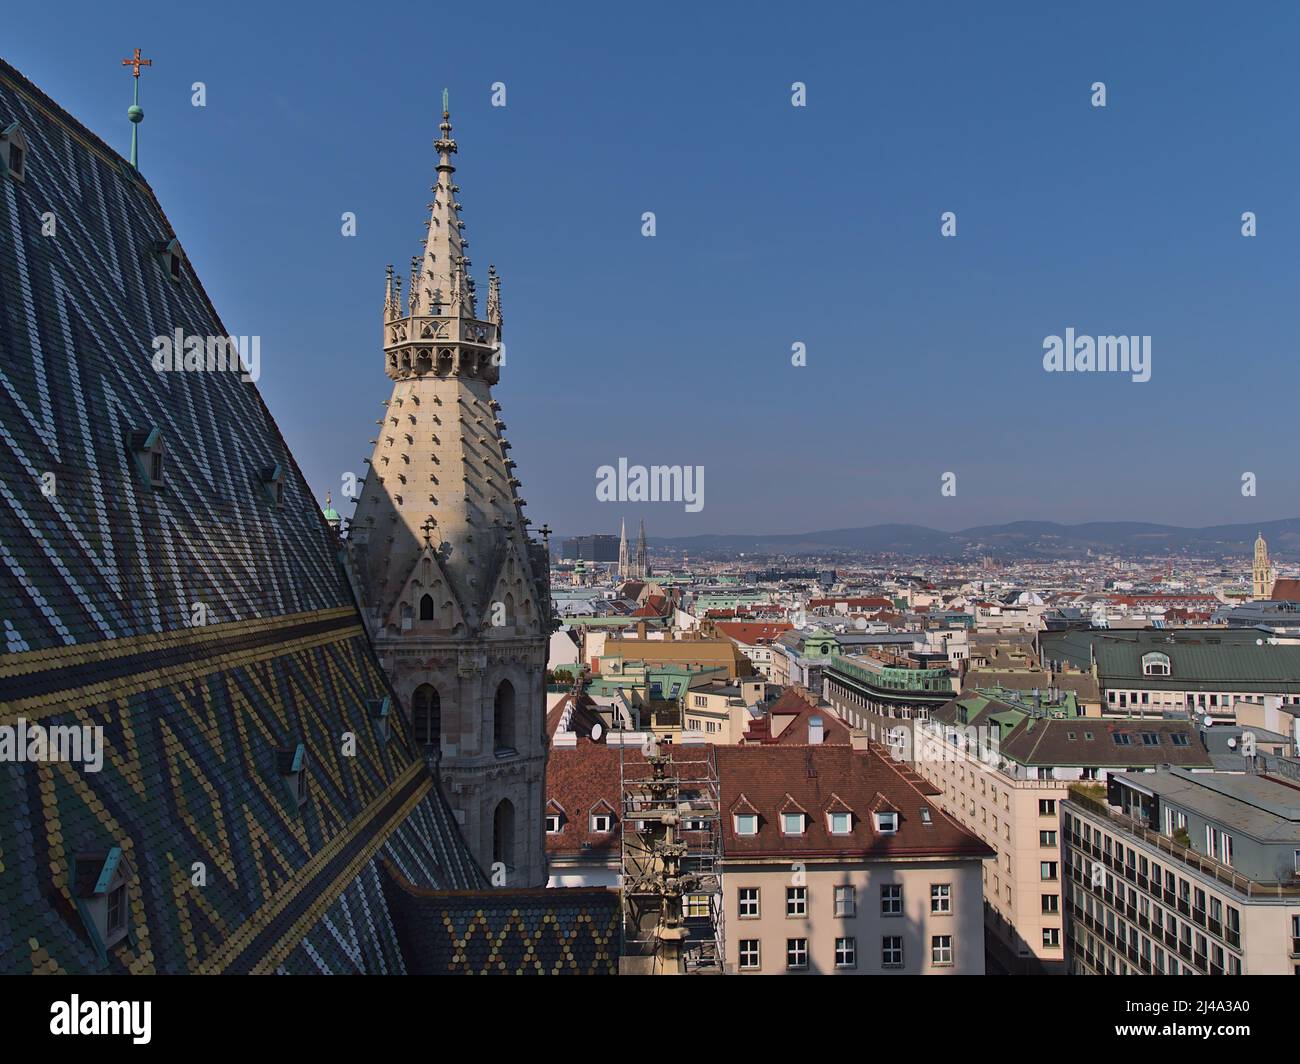 Splendida vista aerea sul centro storico di Vienna, Austria, con il colorato tetto di tegole della famosa chiesa di Stephansdom in giornata di sole. Foto Stock